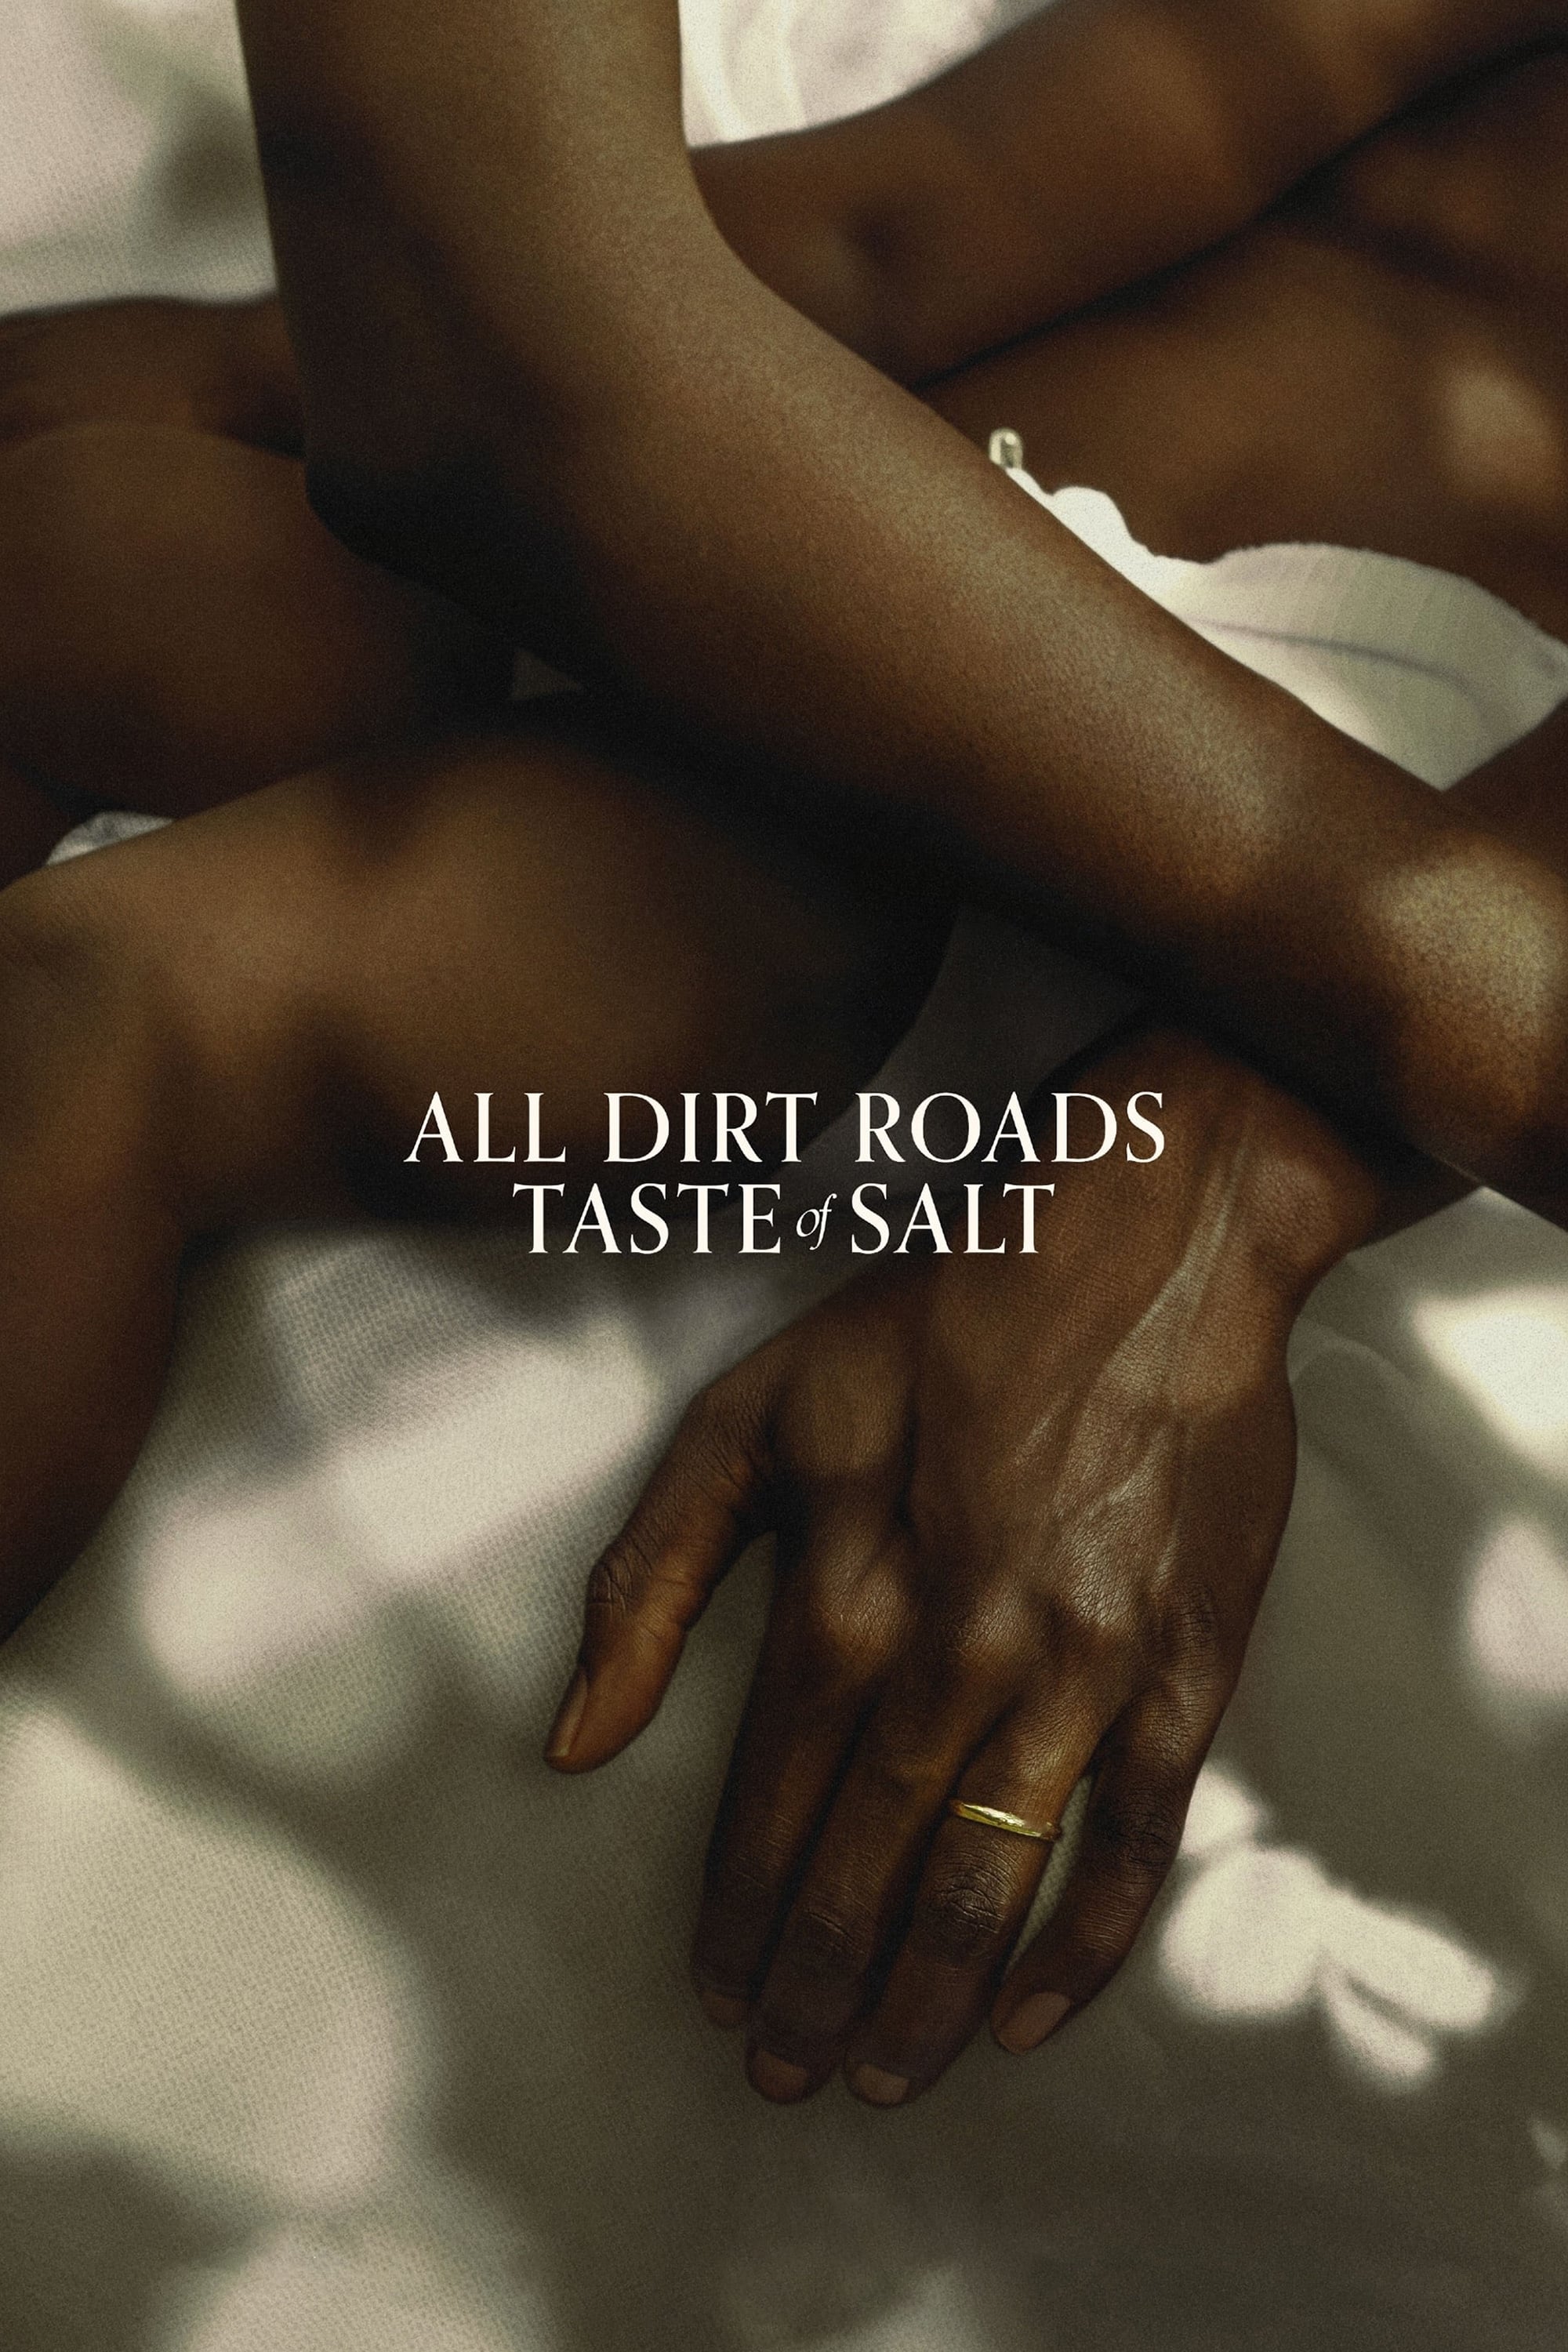 All Dirt Roads Taste of Salt film